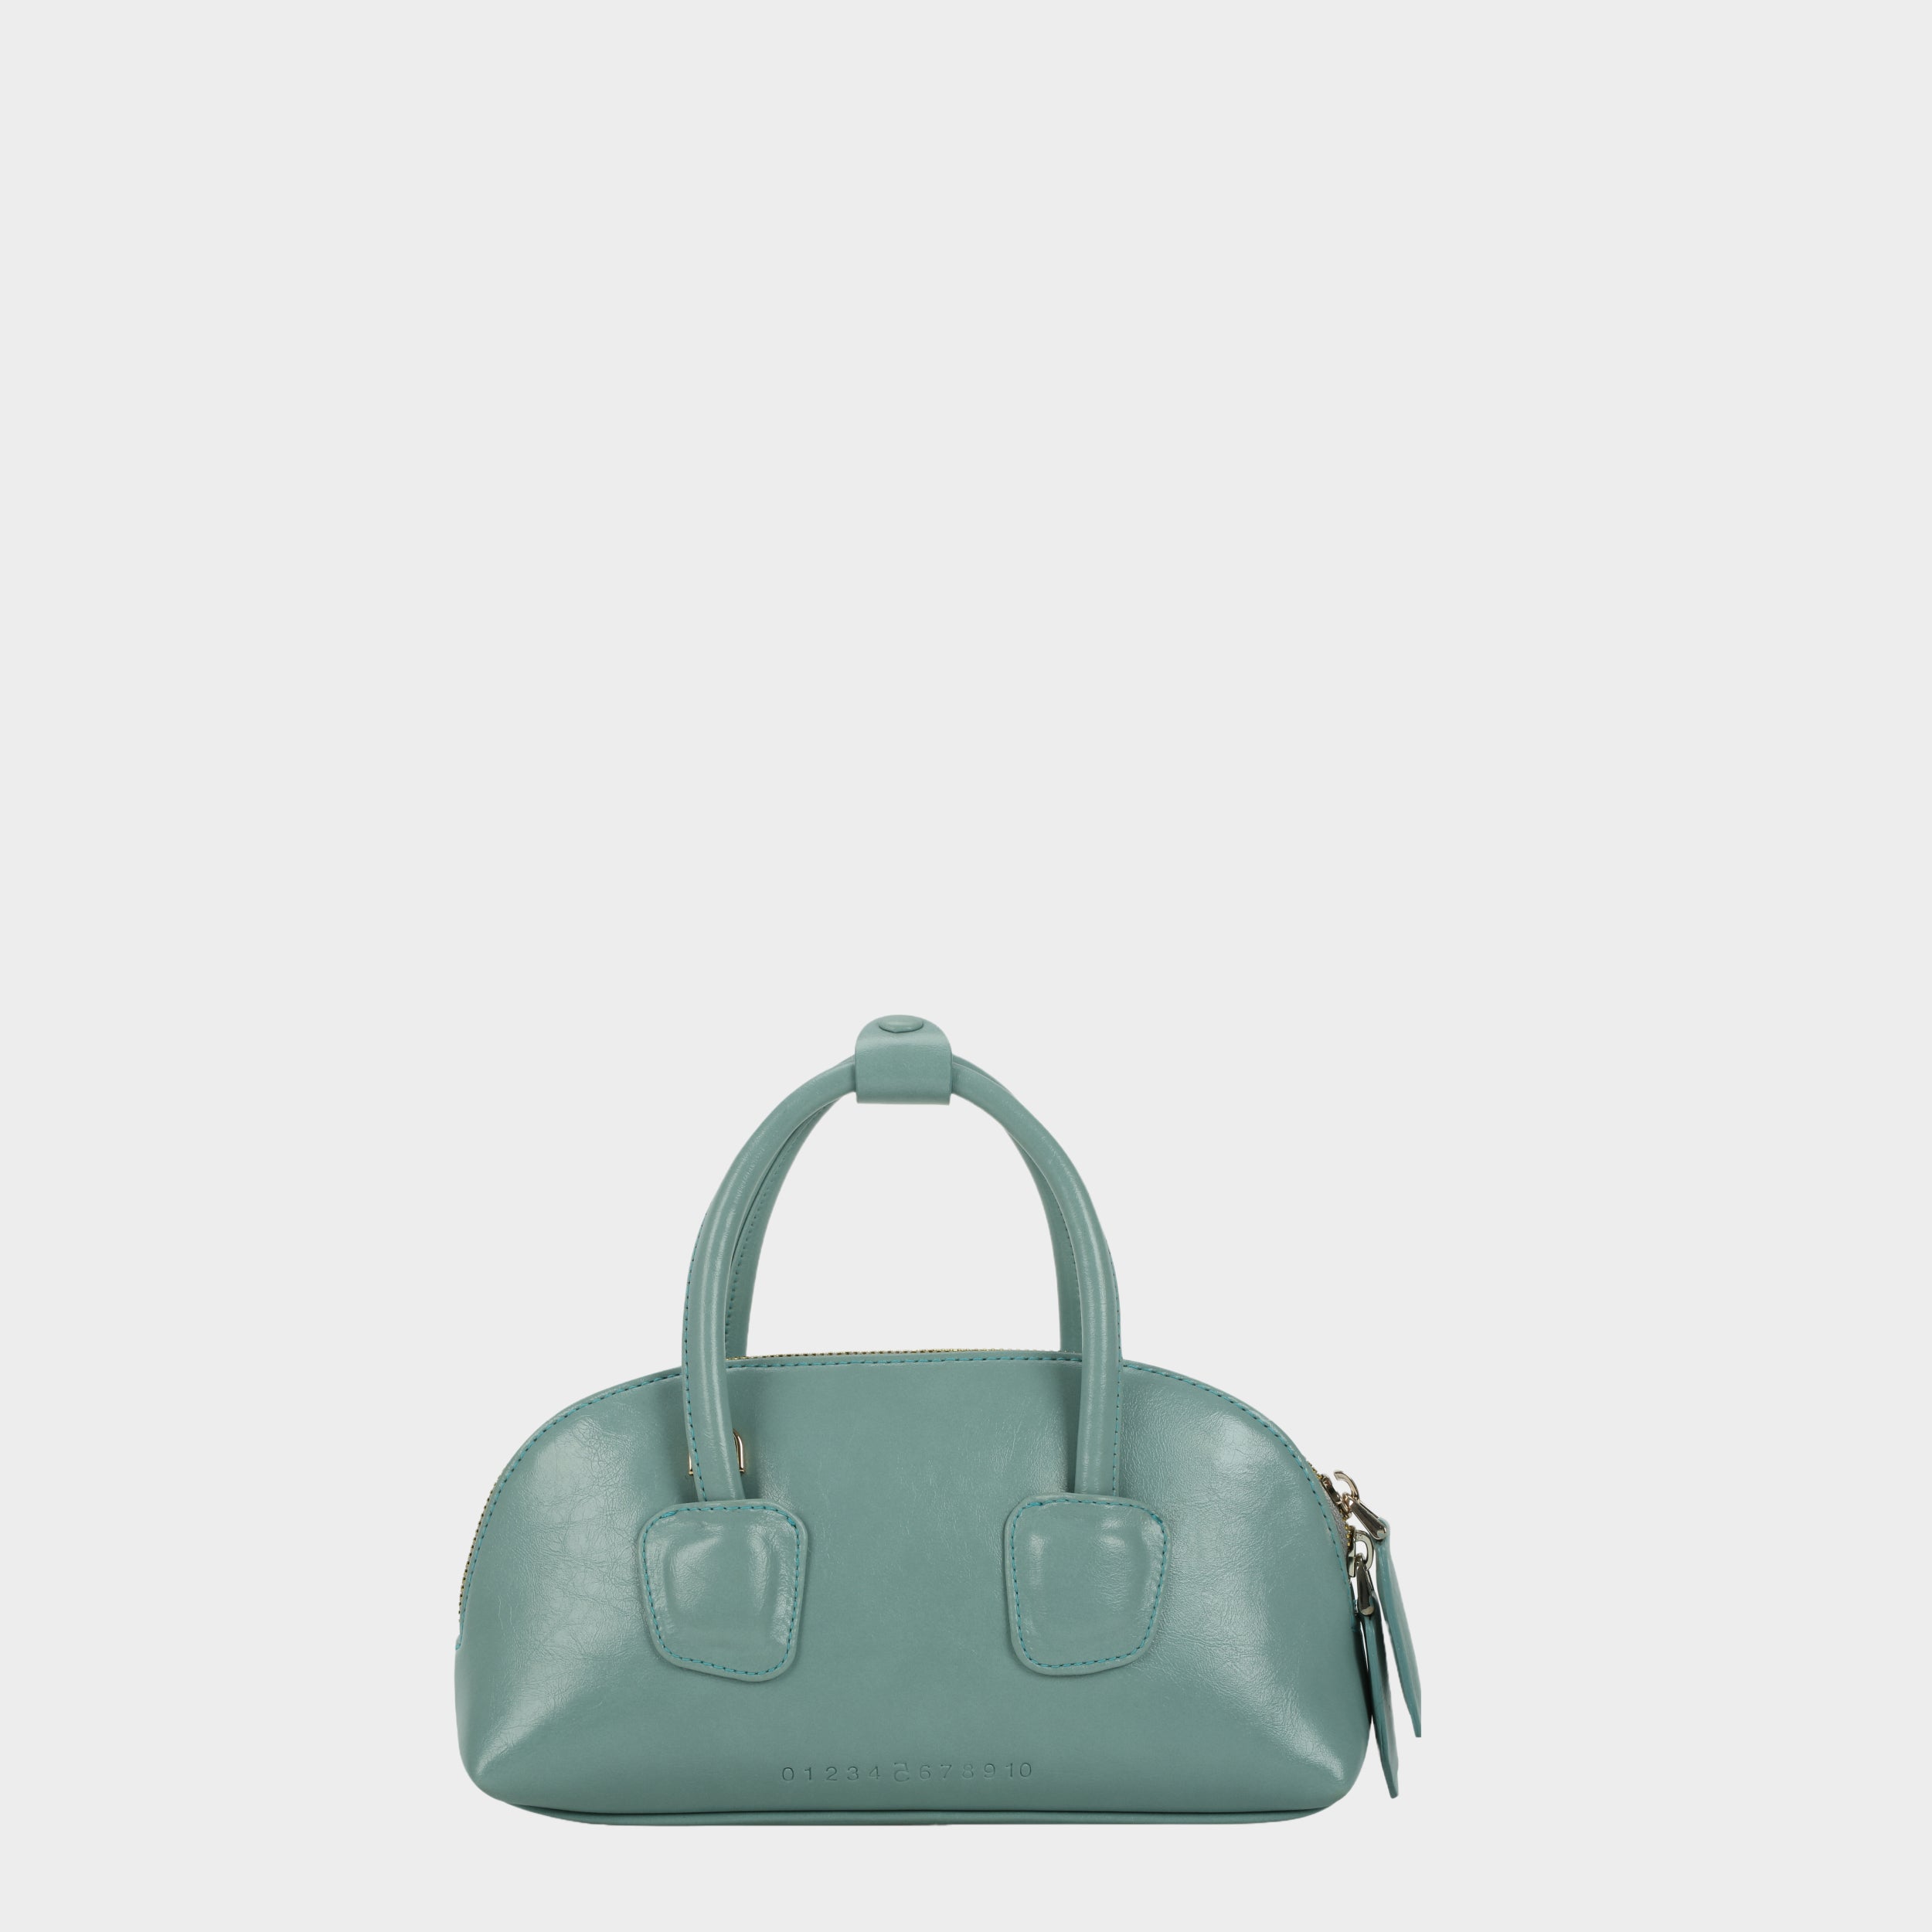 Túi xách TACOS màu xanh ngọc pastel size nhỏ (S)